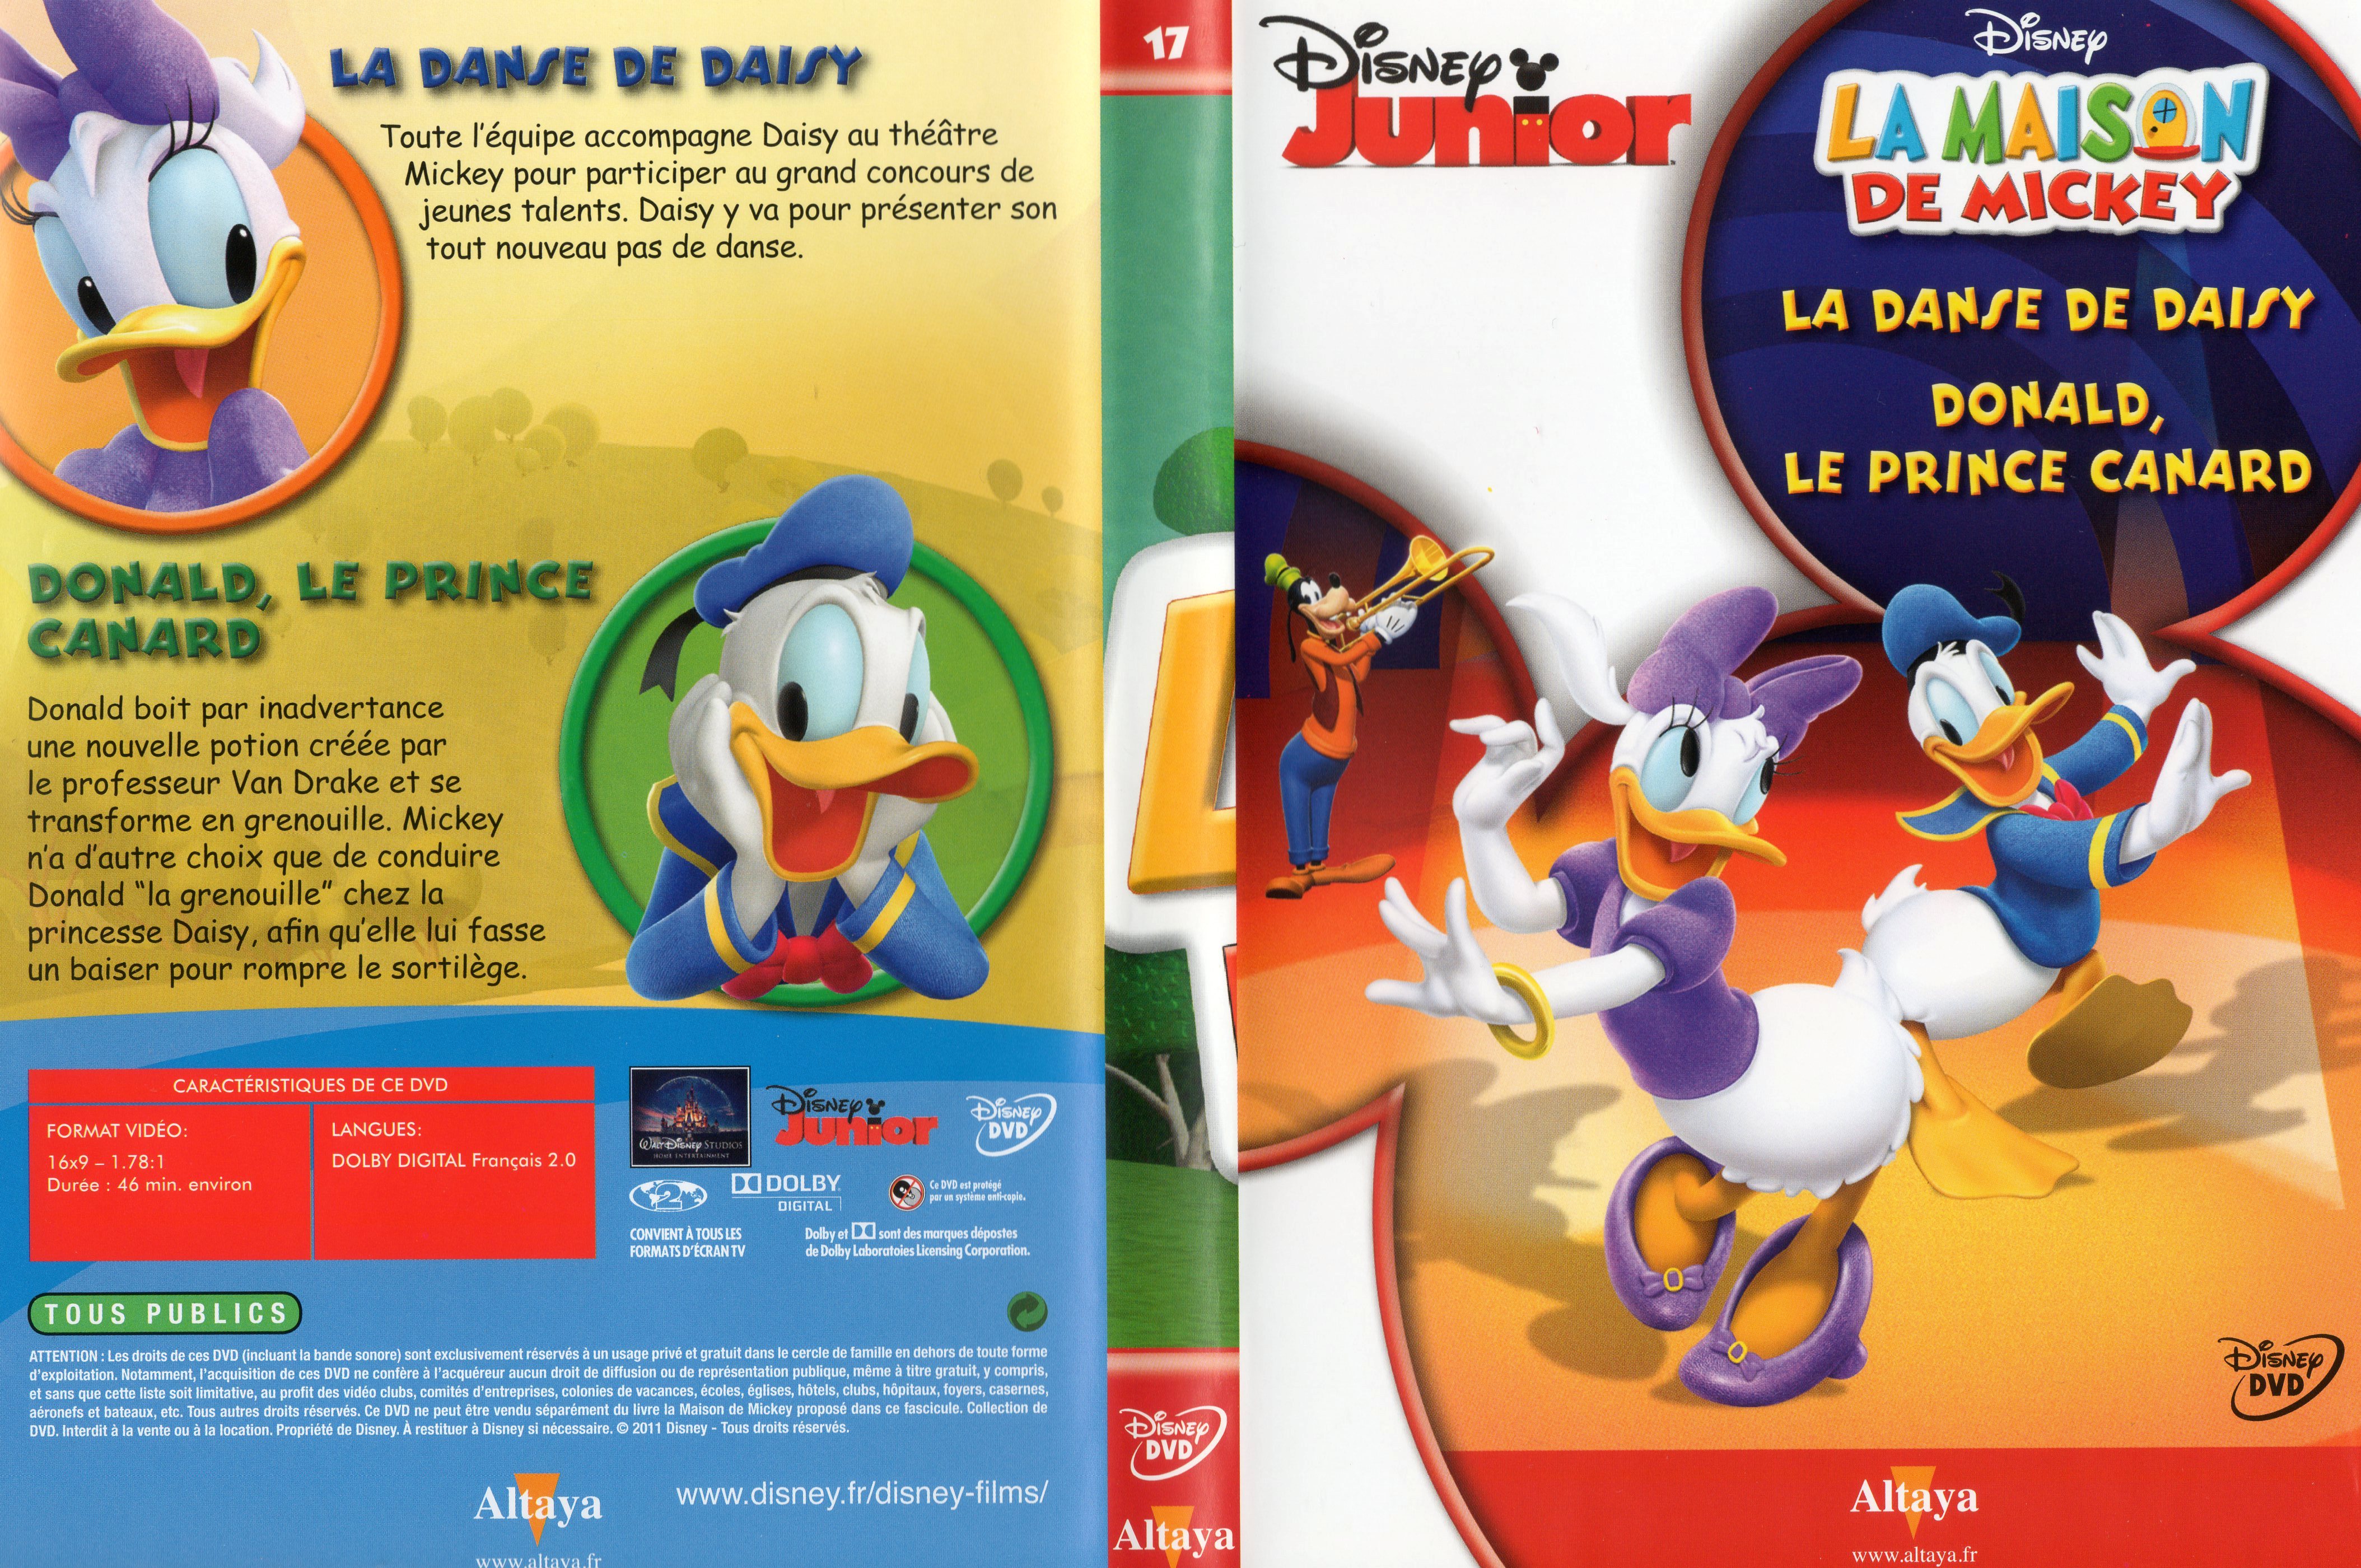 Jaquette DVD La maison de Mickey DVD 17